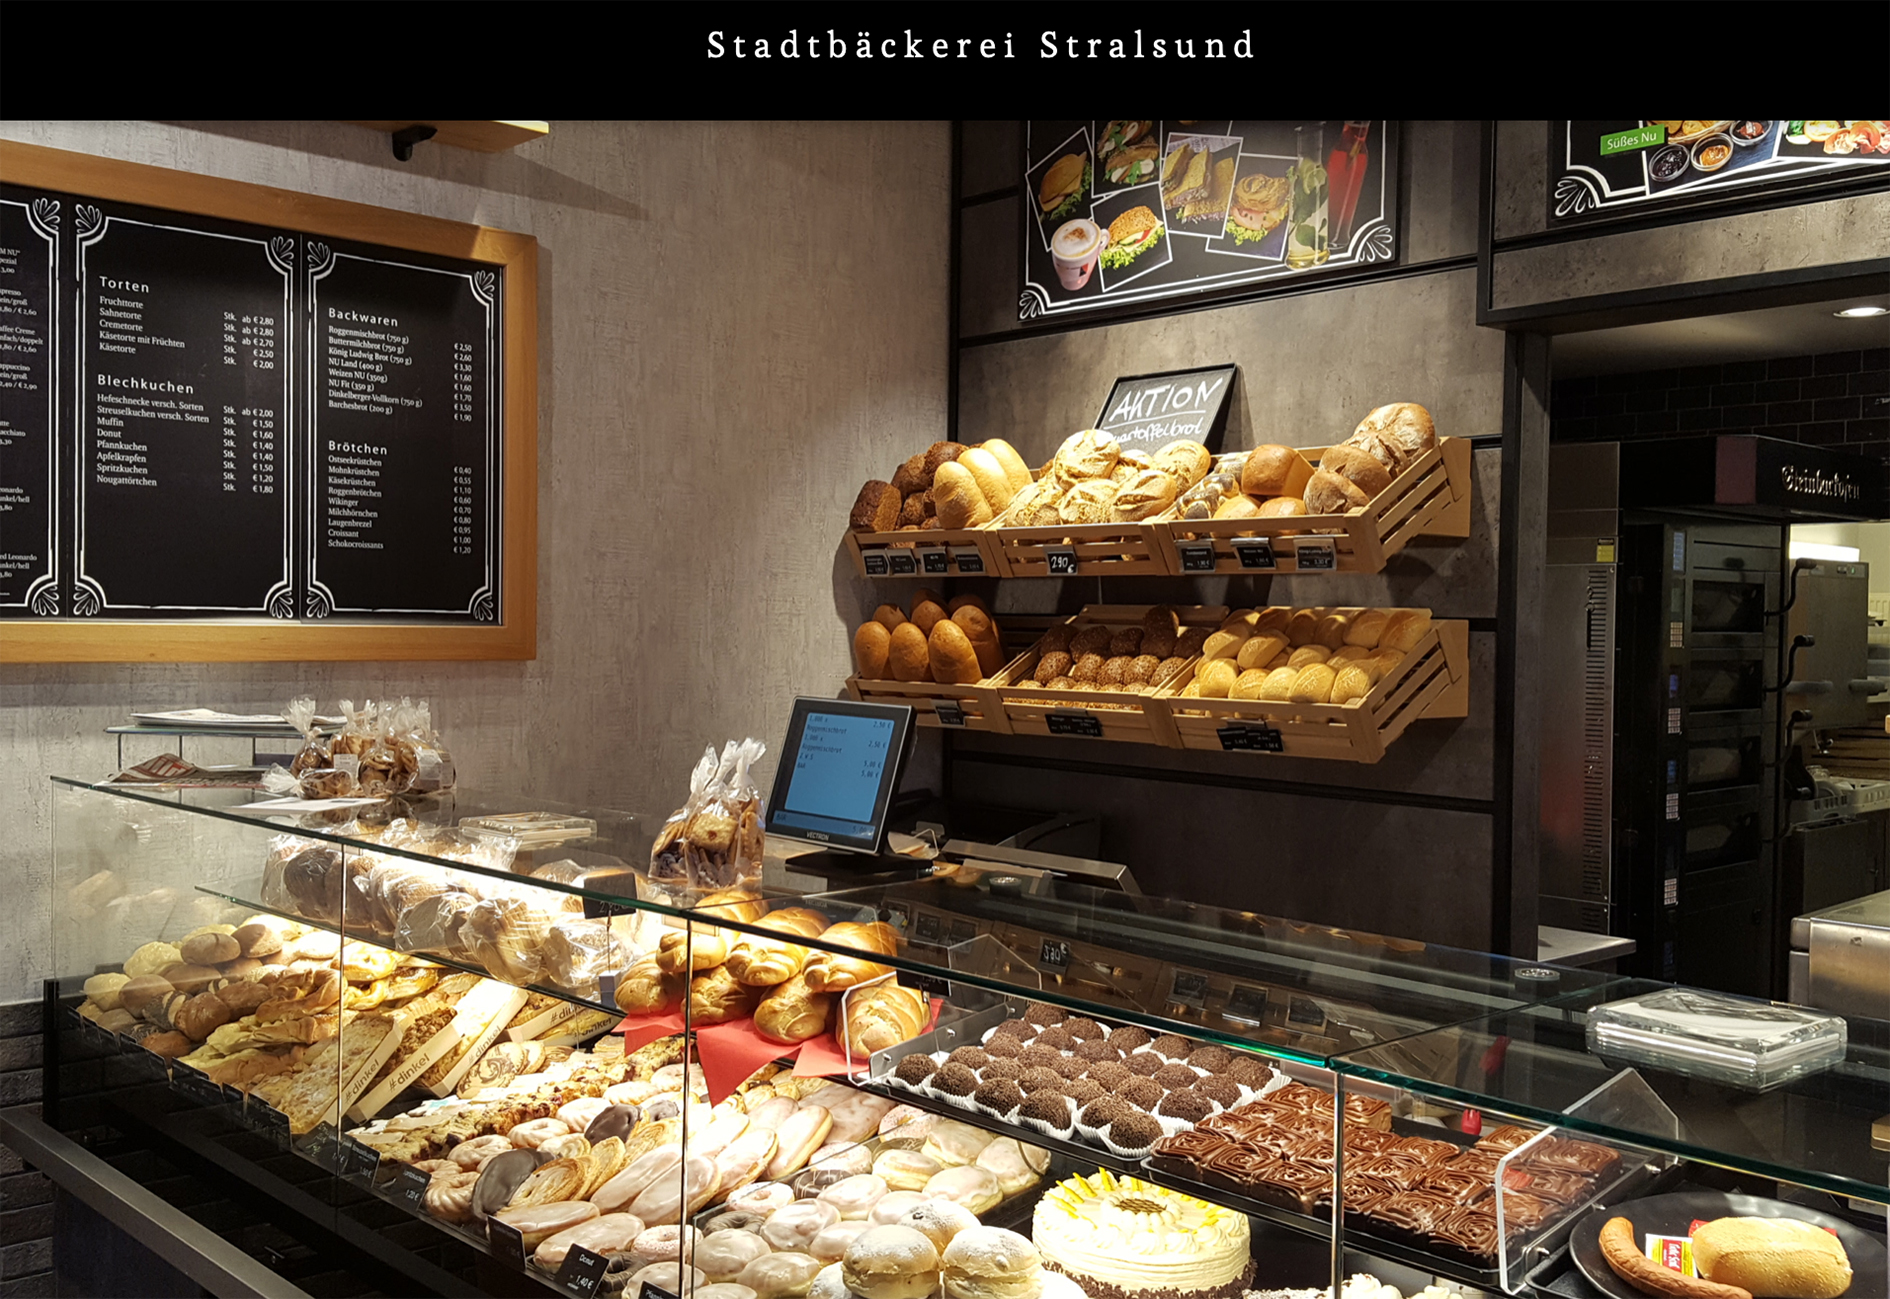 Stadtbäckerei Stralsund stellt Produktion ein